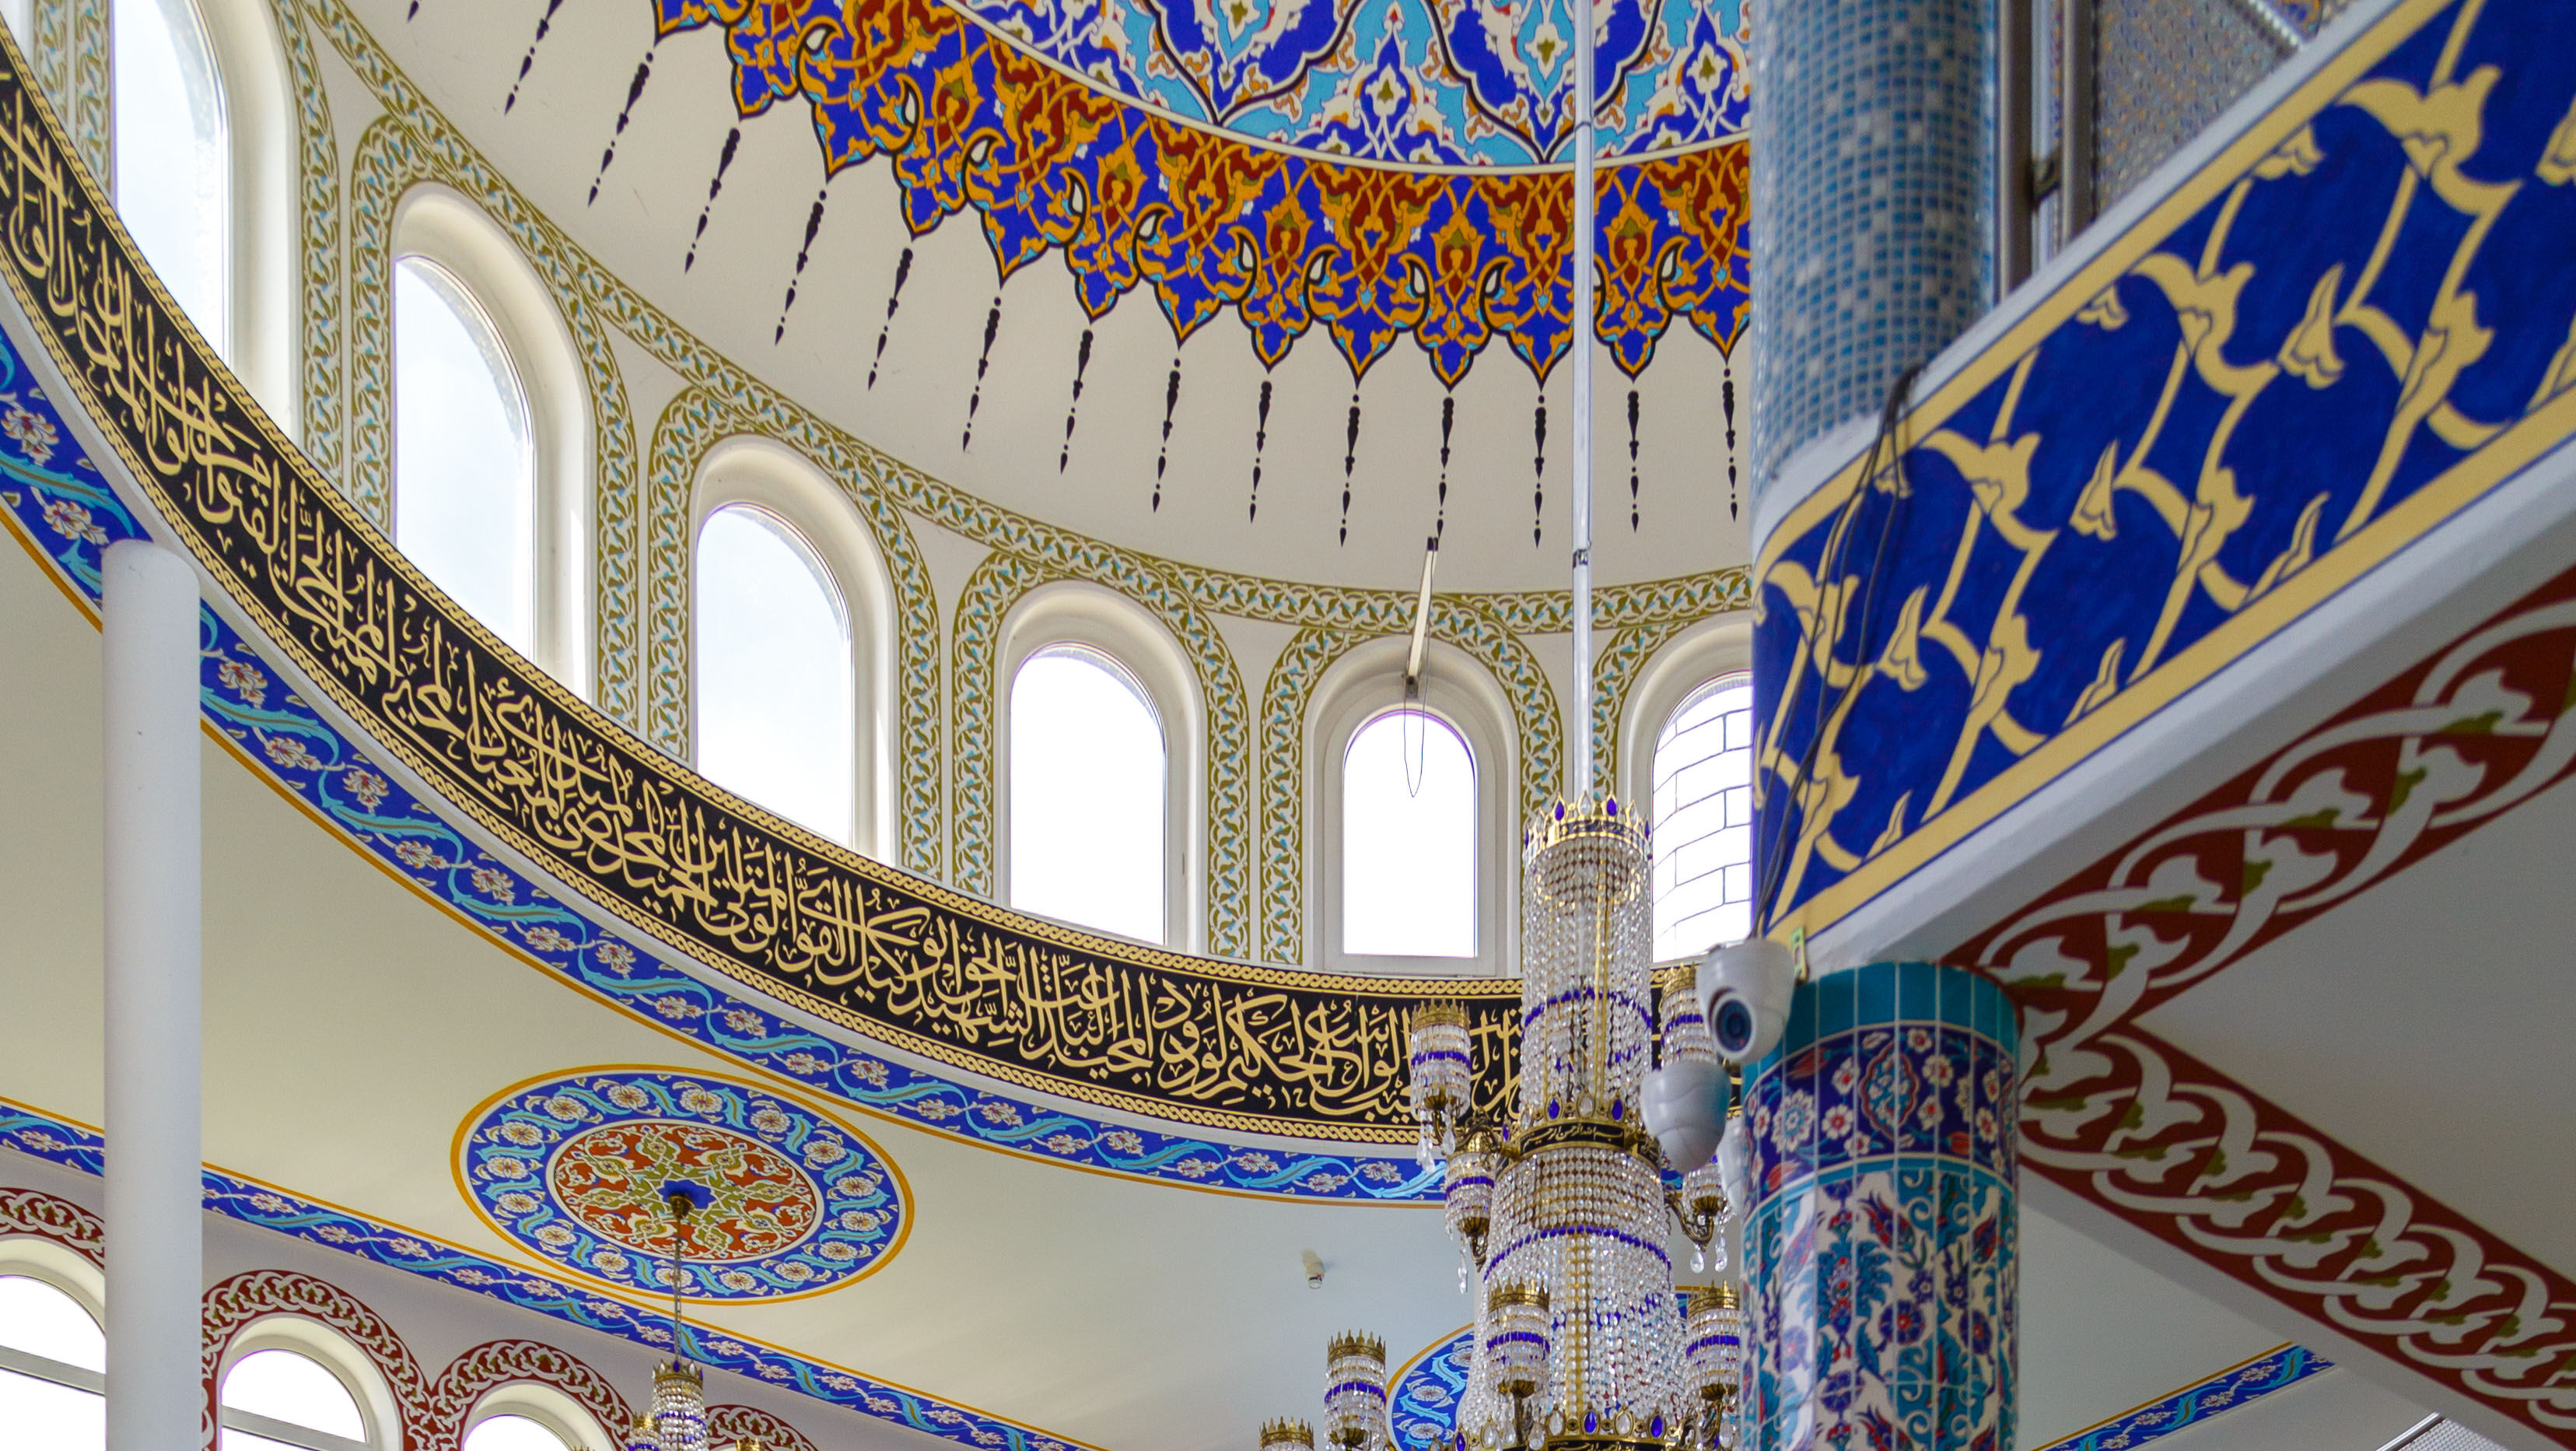 Foto des Gebetsraums für Männer in der Emir Sultan Moschee, Darmstadt. An den Wänden befinden sich bunte, verzierte Fliesen, auf dem Boden ist ein ebenso detailierter Teppich und in der Mitte des Raums hängt ein riesiger Kronleuchter mit goldenem Gestell, behangen mit einer Vielzahl an Kristallglas